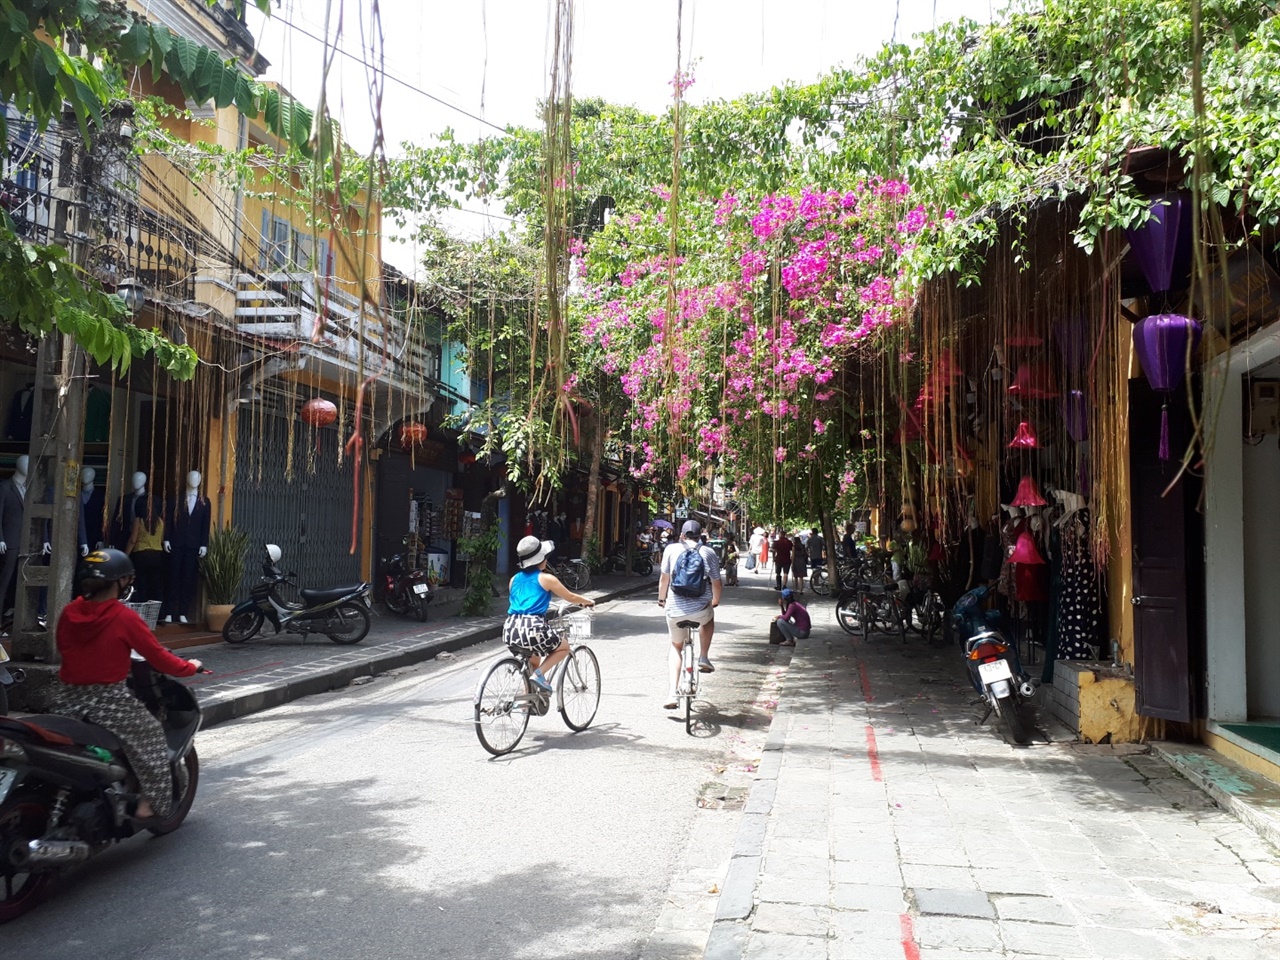 호이안의 길거리는 아름답기로 유명하다. 구시가에는 세계각국에서 오는 여행자들로 붐빈다.